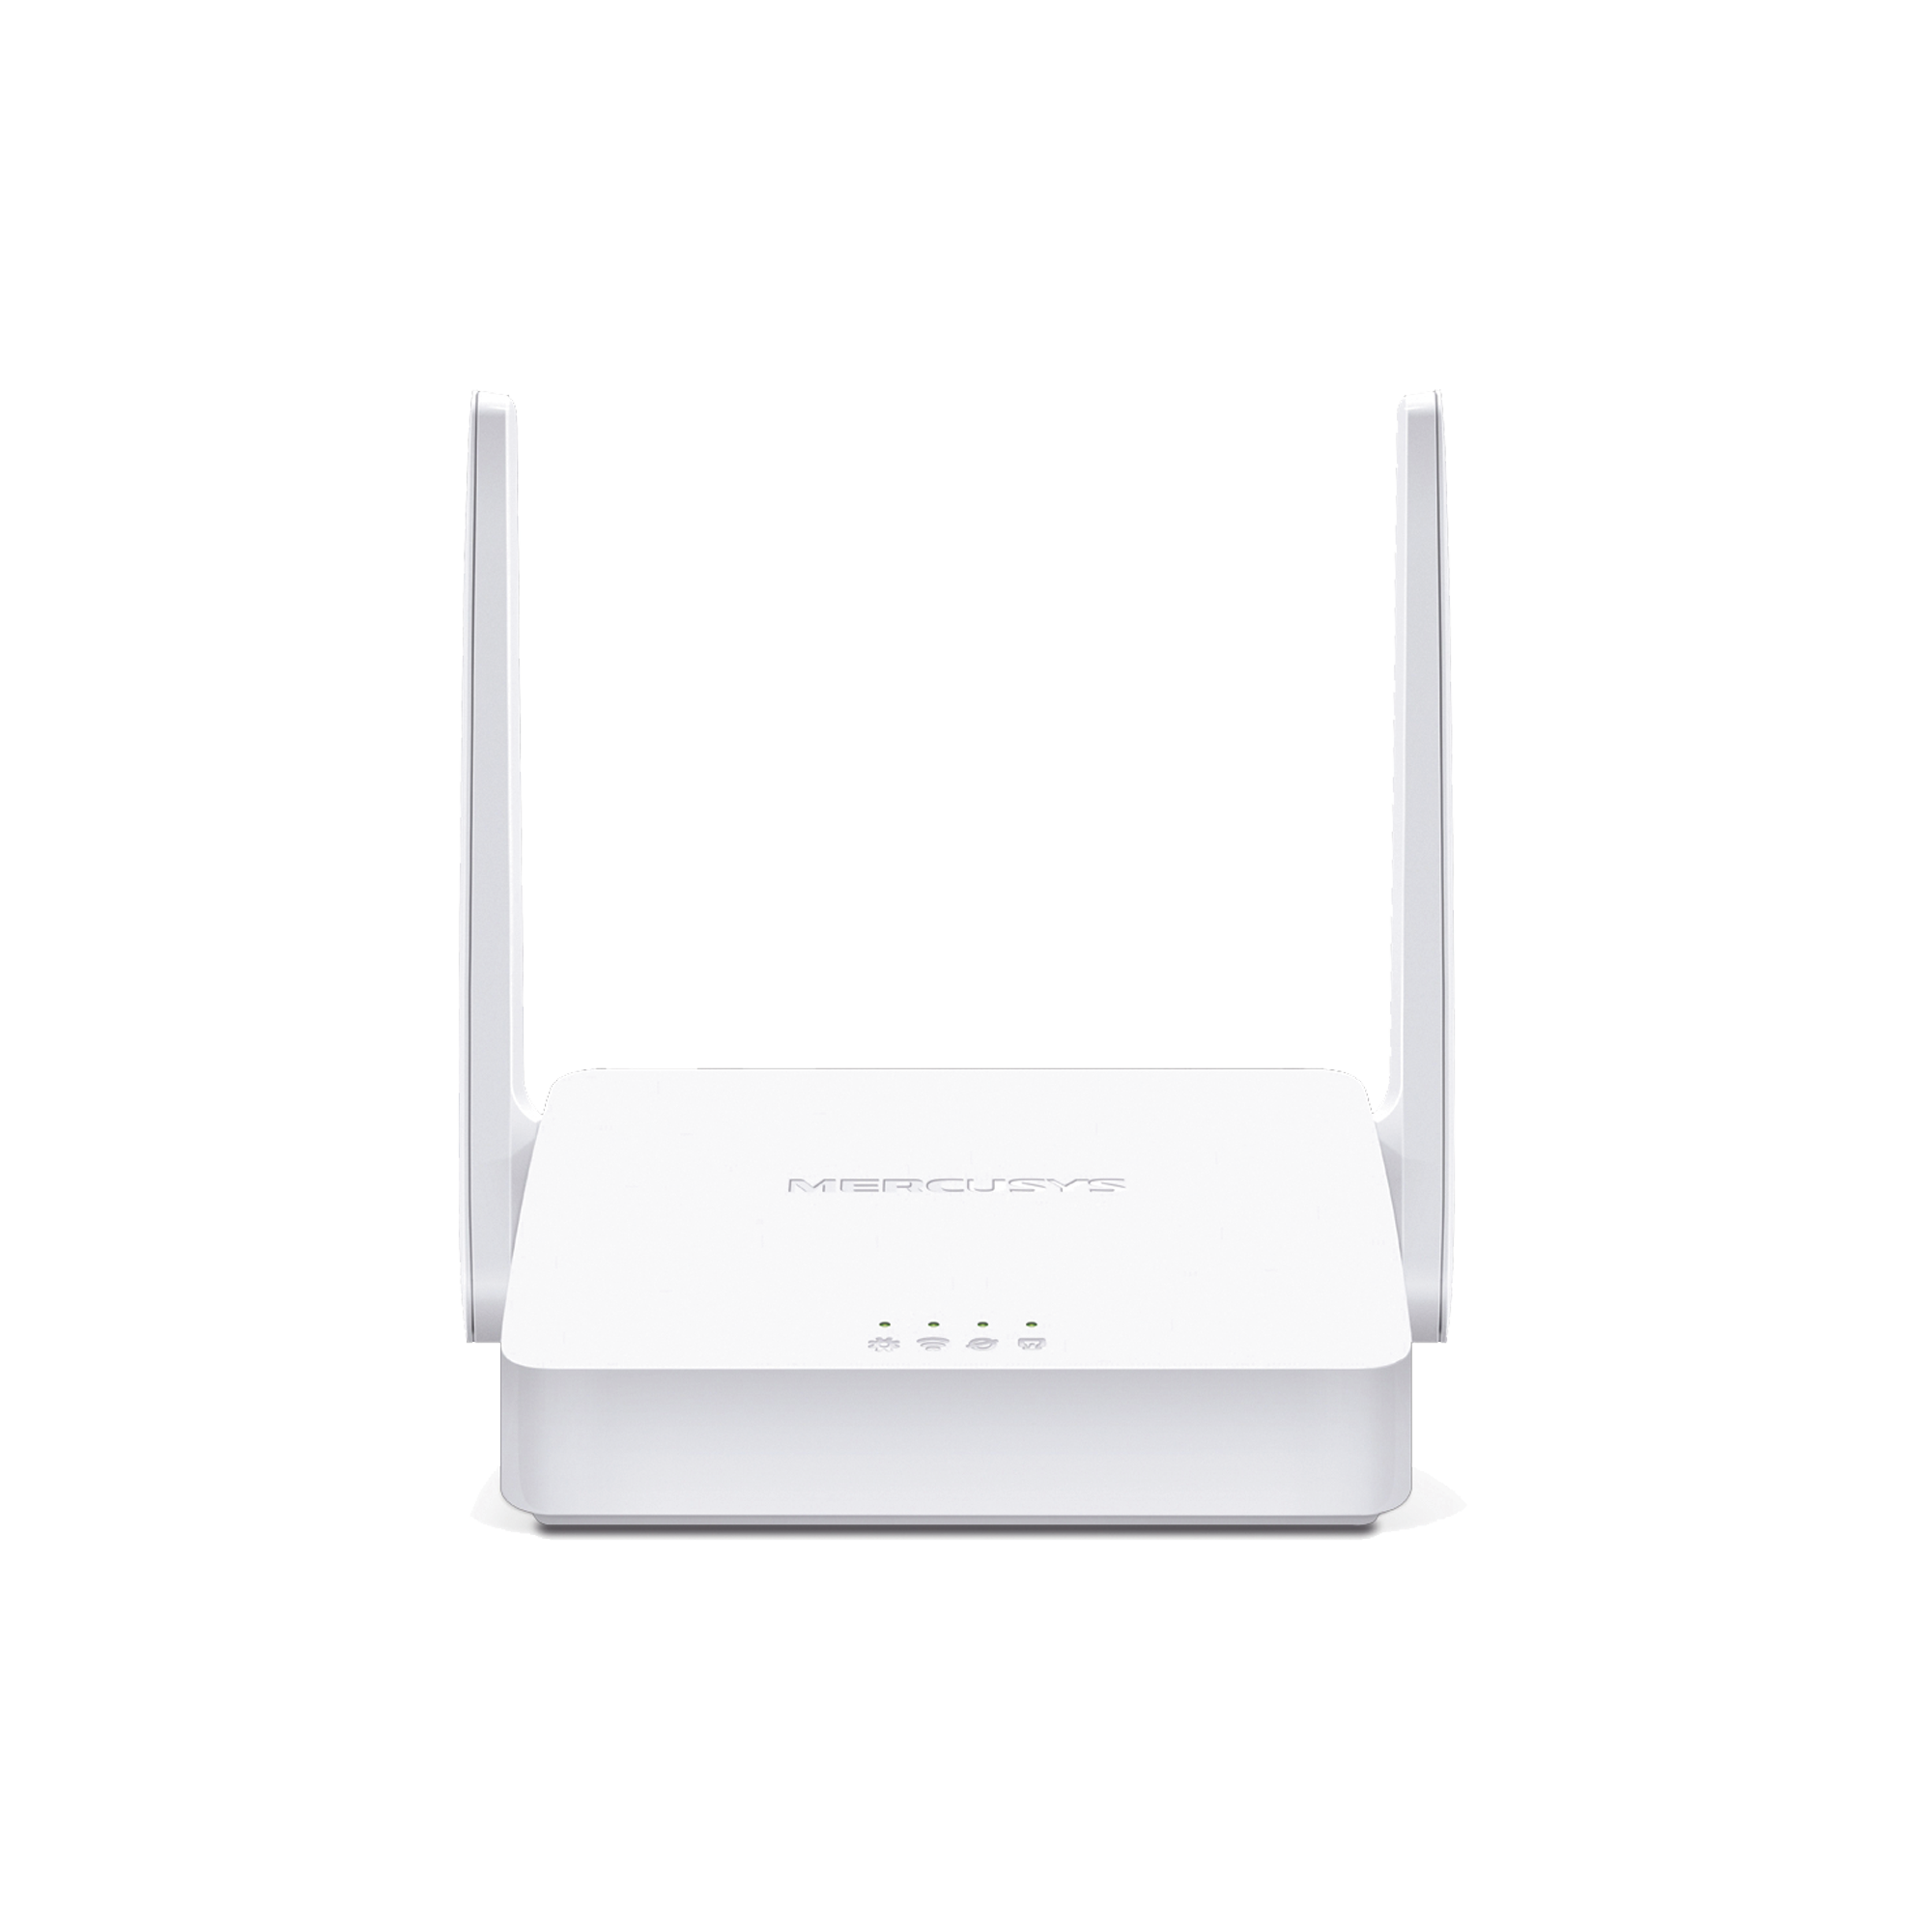 Router Inalámbrico N /  2.4 GHz de 300 Mbps / 1 Puerto WAN 10/100 Mbps  / 2 Puertos LAN 10/100 Mbps / 2 antenas de 5 dBi / Compatible con IPV6 e IPTV